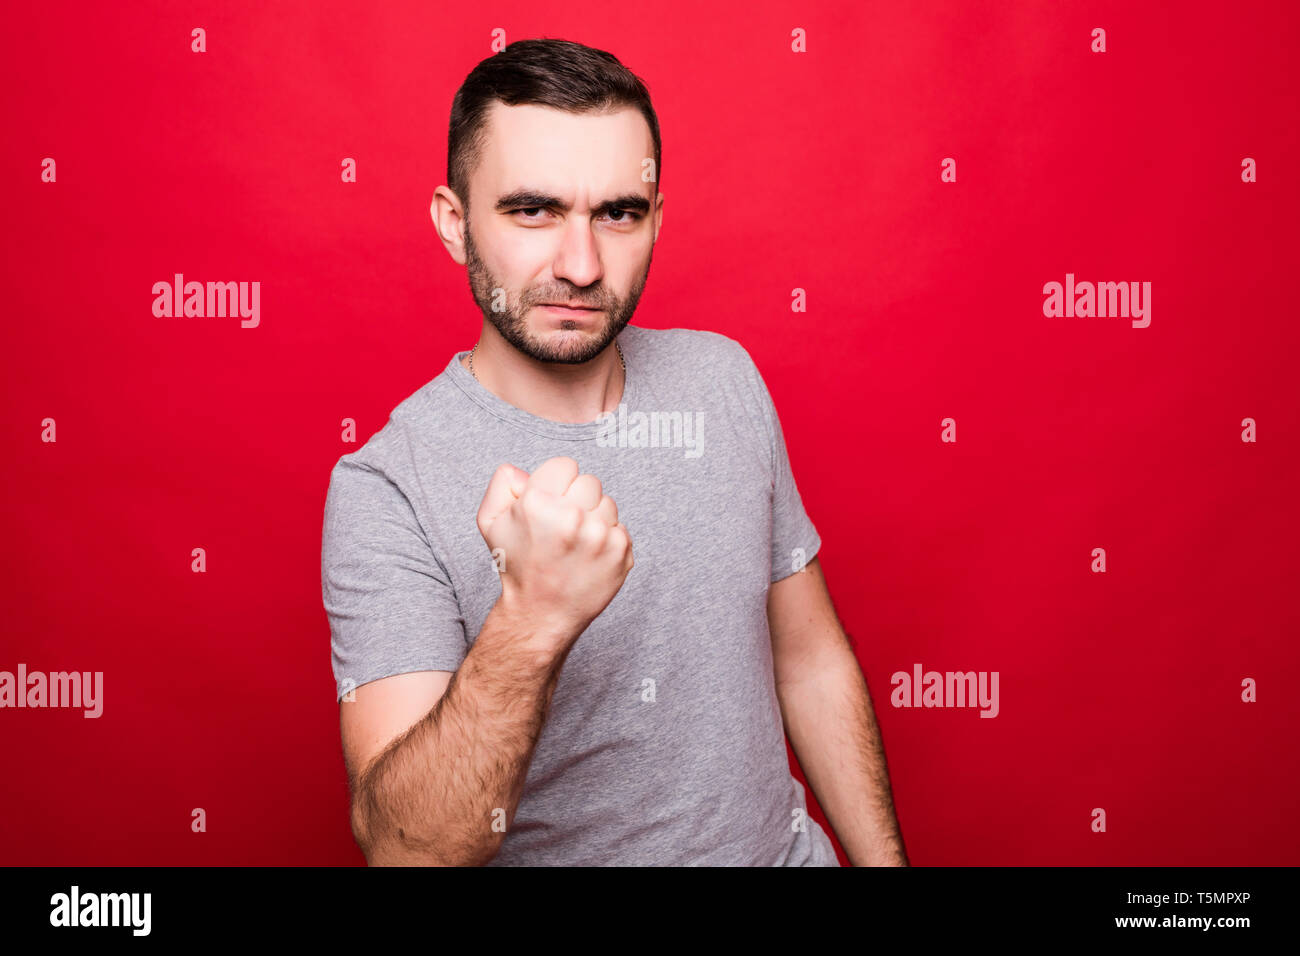 Angry Young Man Show geballte Faust drohen oder Warnung geben auf Roten studio Hintergrund isoliert Gefahr oder Bedrohung zeigen Stockfoto